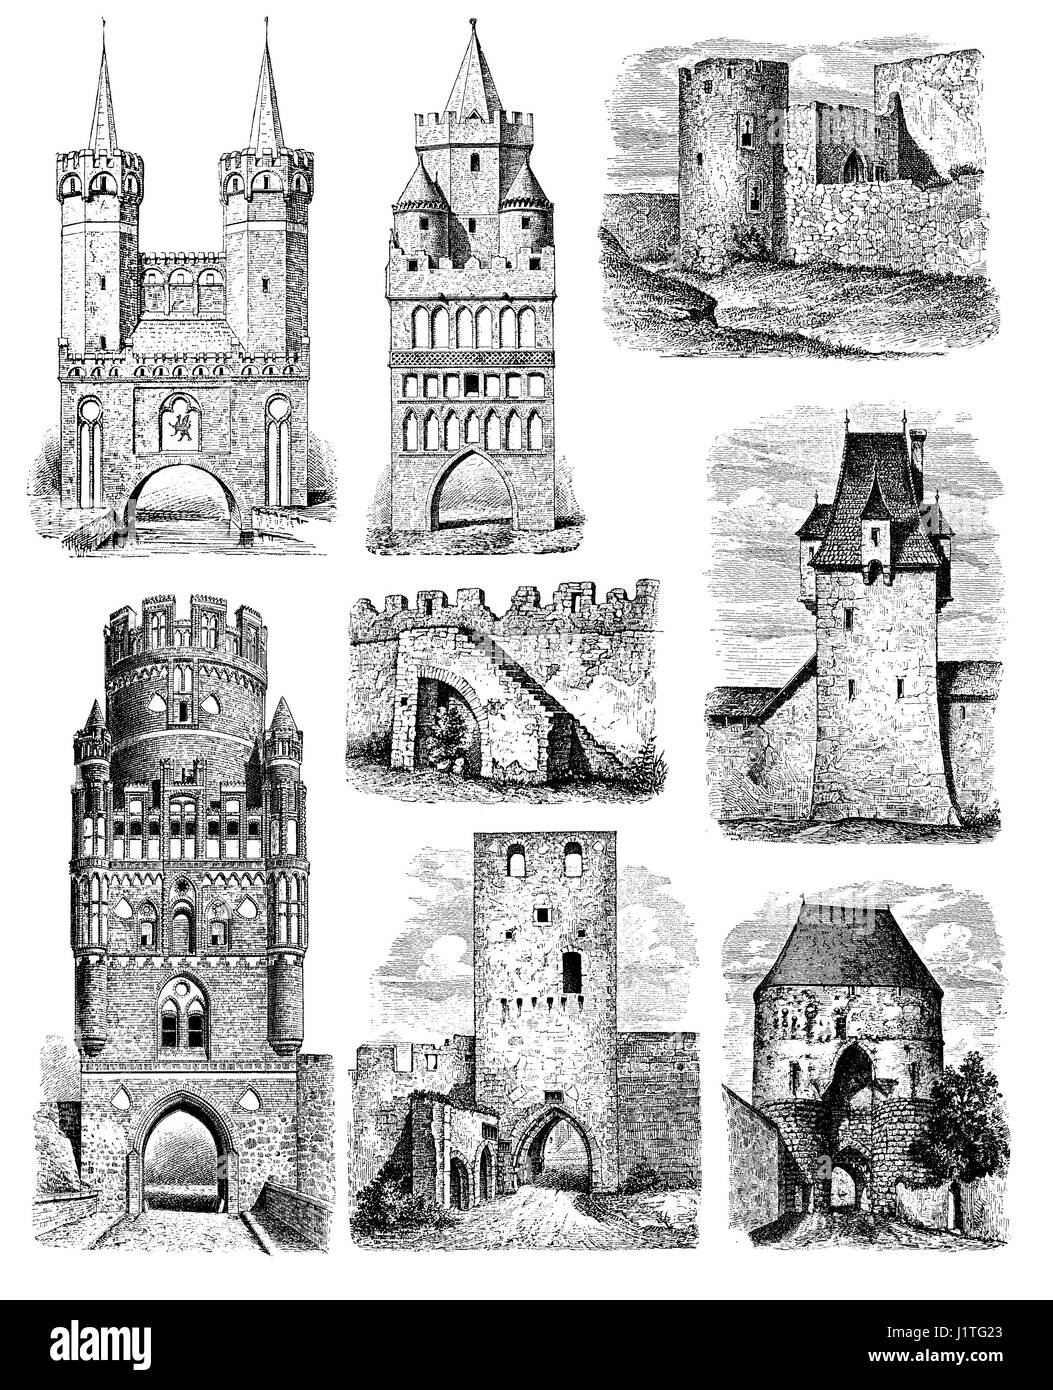 Alemán medieval ciudades de fortificaciones, puertas de entrada y castillos Foto de stock